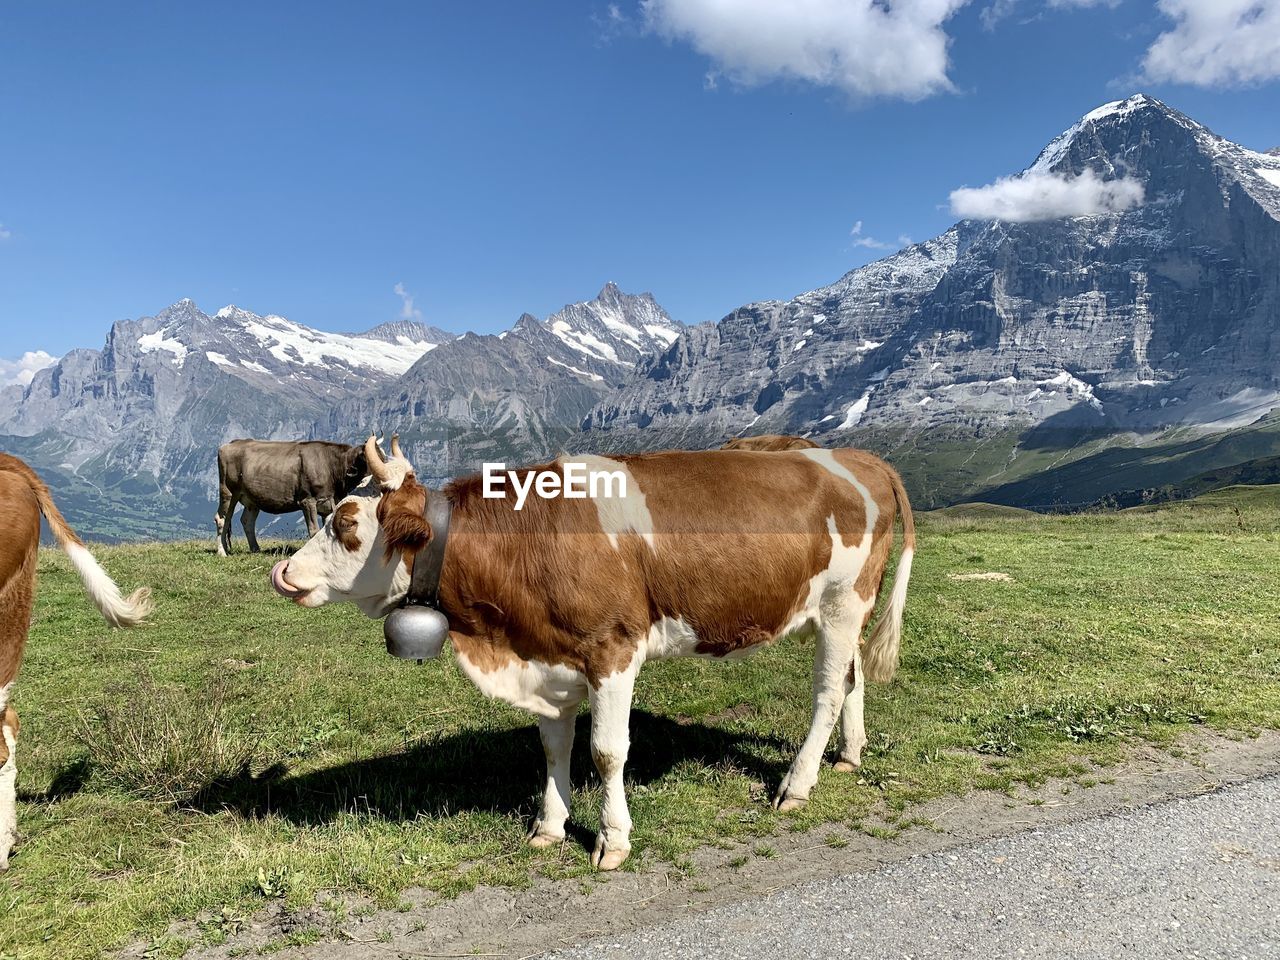 Swiss cow in a field